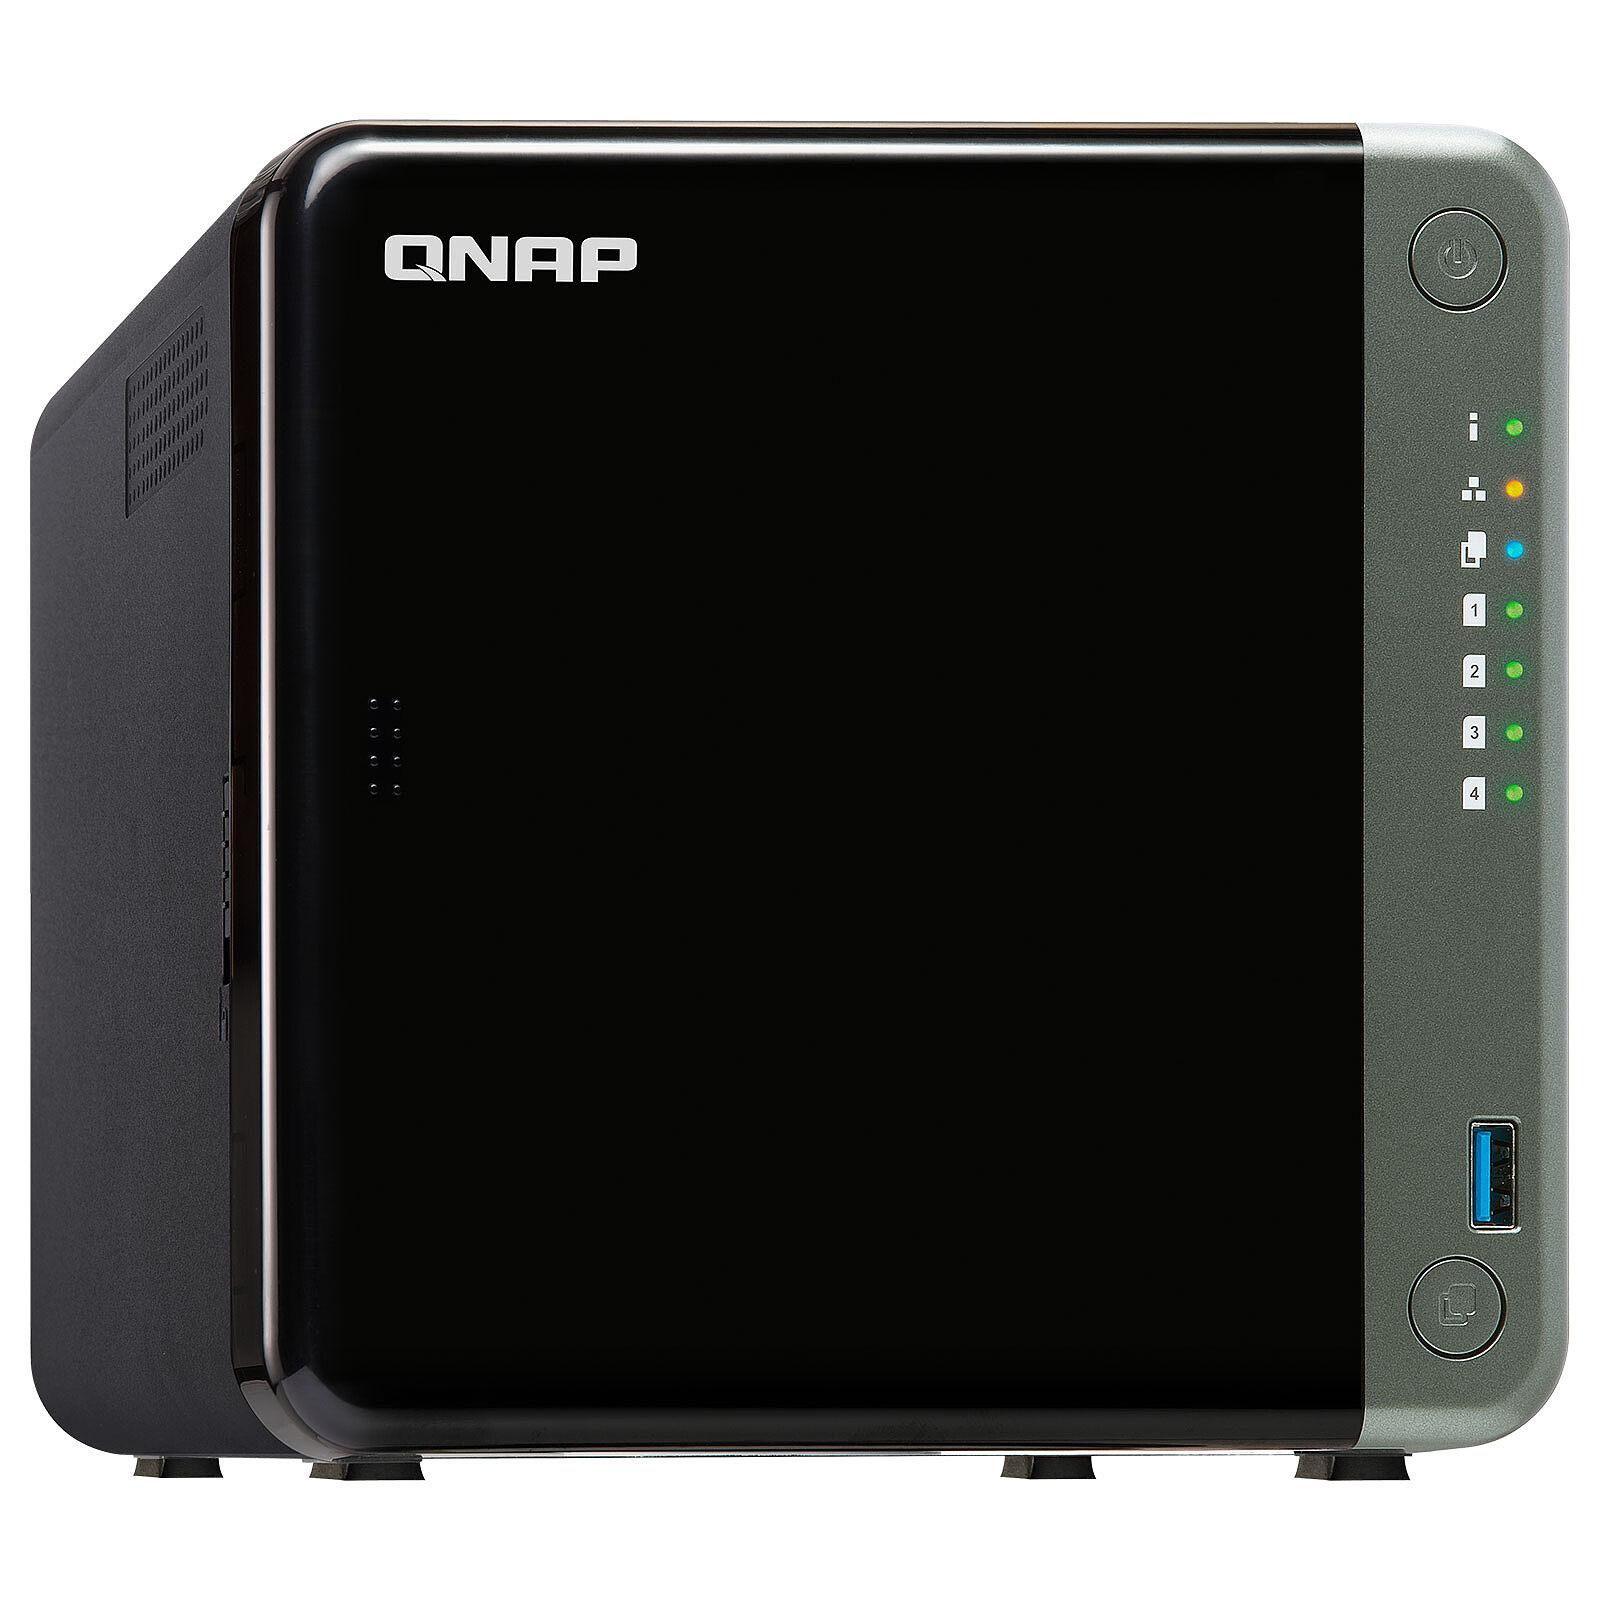 QNAP TL-D400S - Serveur NAS - Garantie 3 ans LDLC